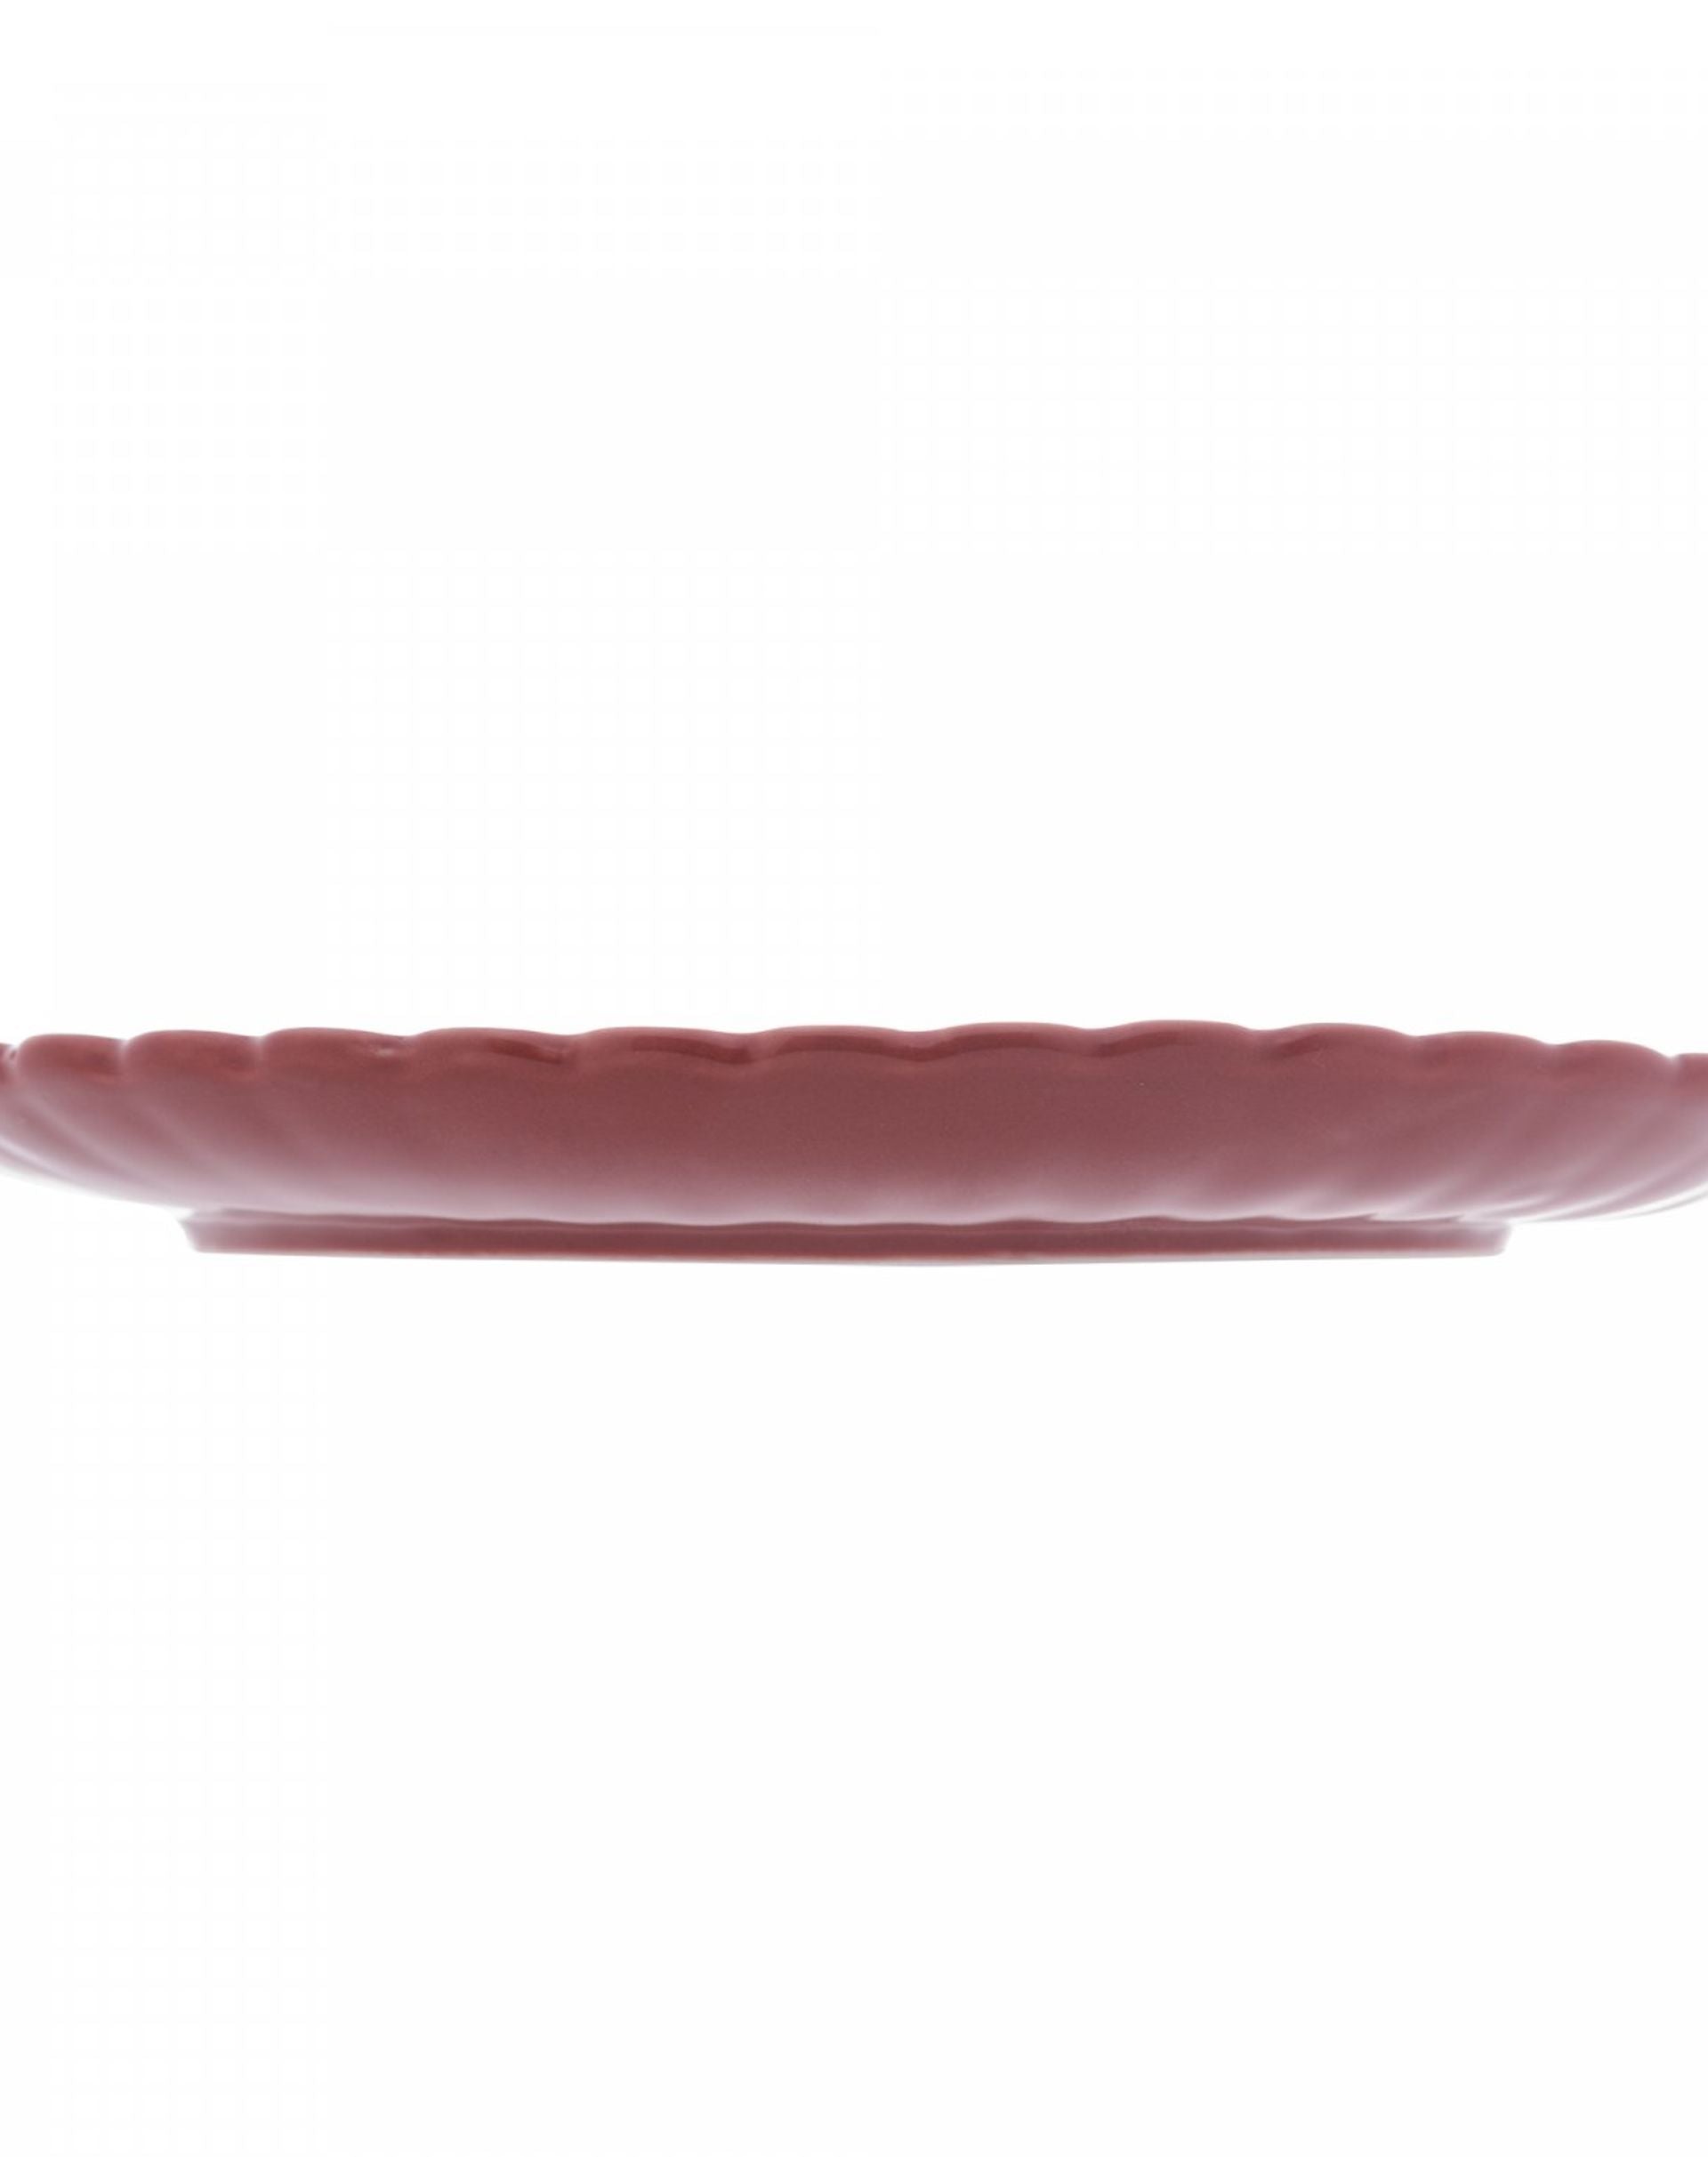 Conjunto 2 Pratos para Sobremesa de Porcelana Pétala Vermelho Matt 20 cm - Wolff - MULTI COLORIDO